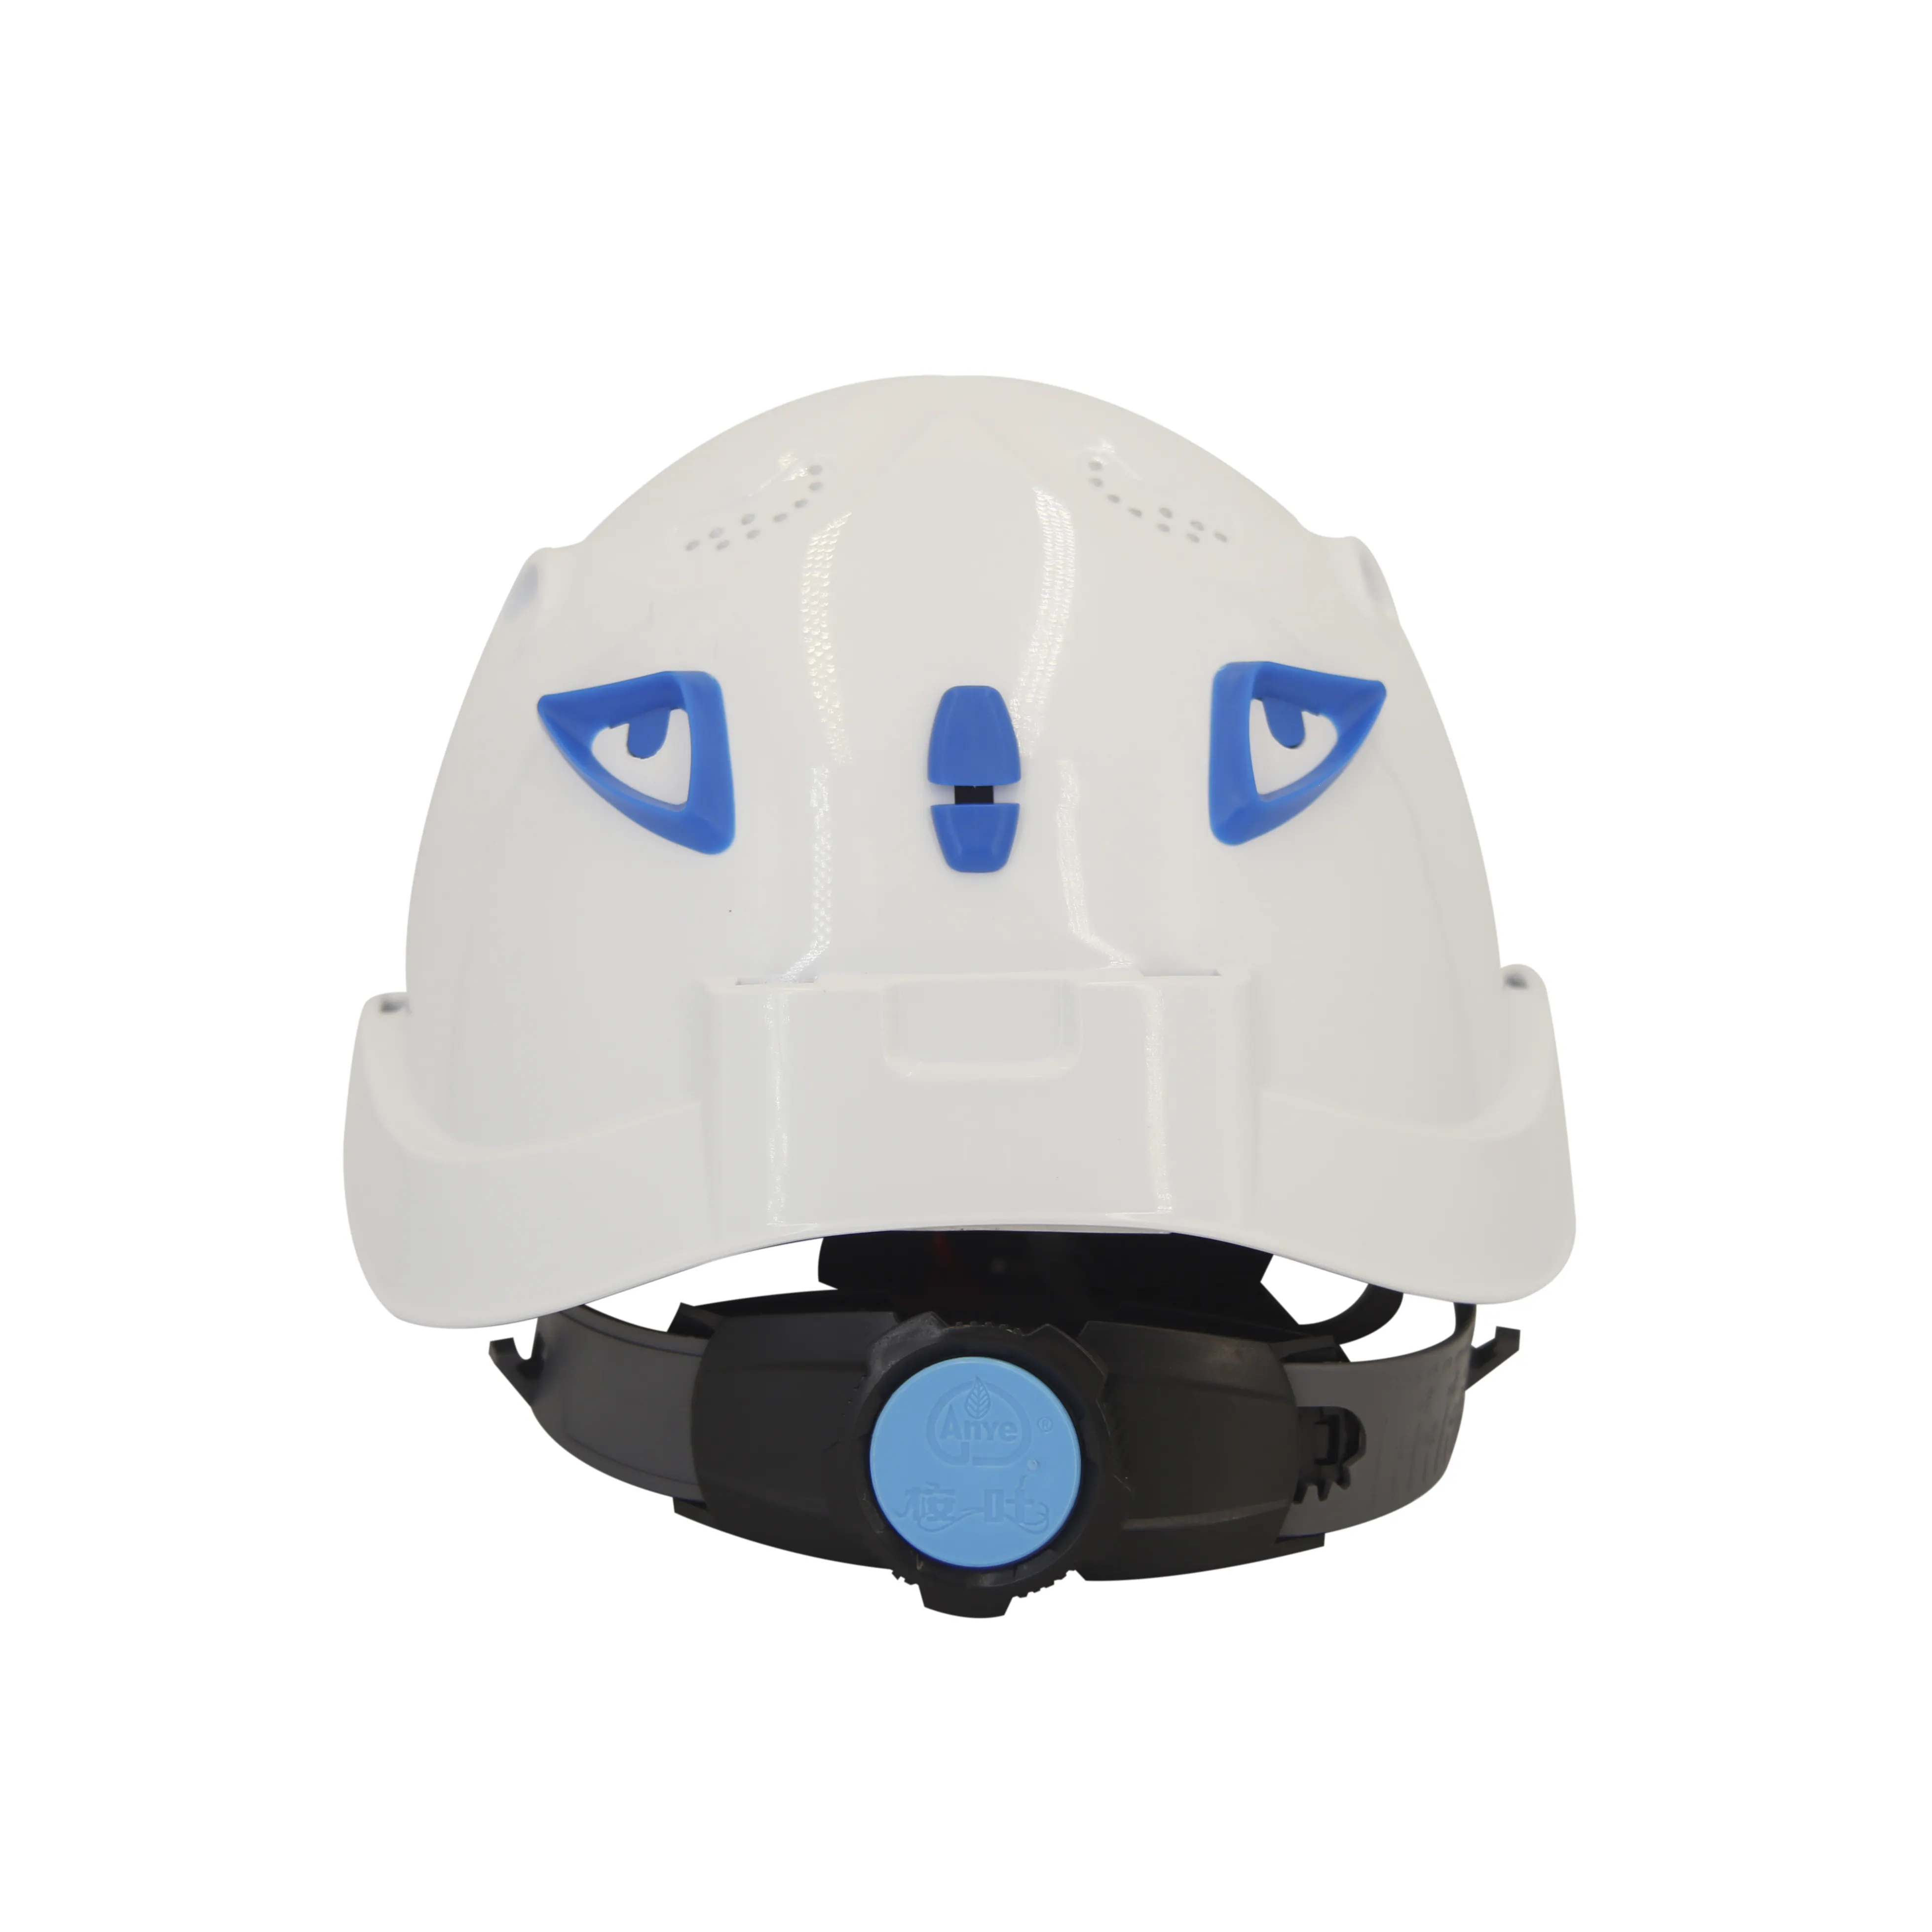 AnYe 새로운 판매 구조 바위 안전 고글 스포츠 캡 저렴한 가격의 헬멧 등반 안전 모자